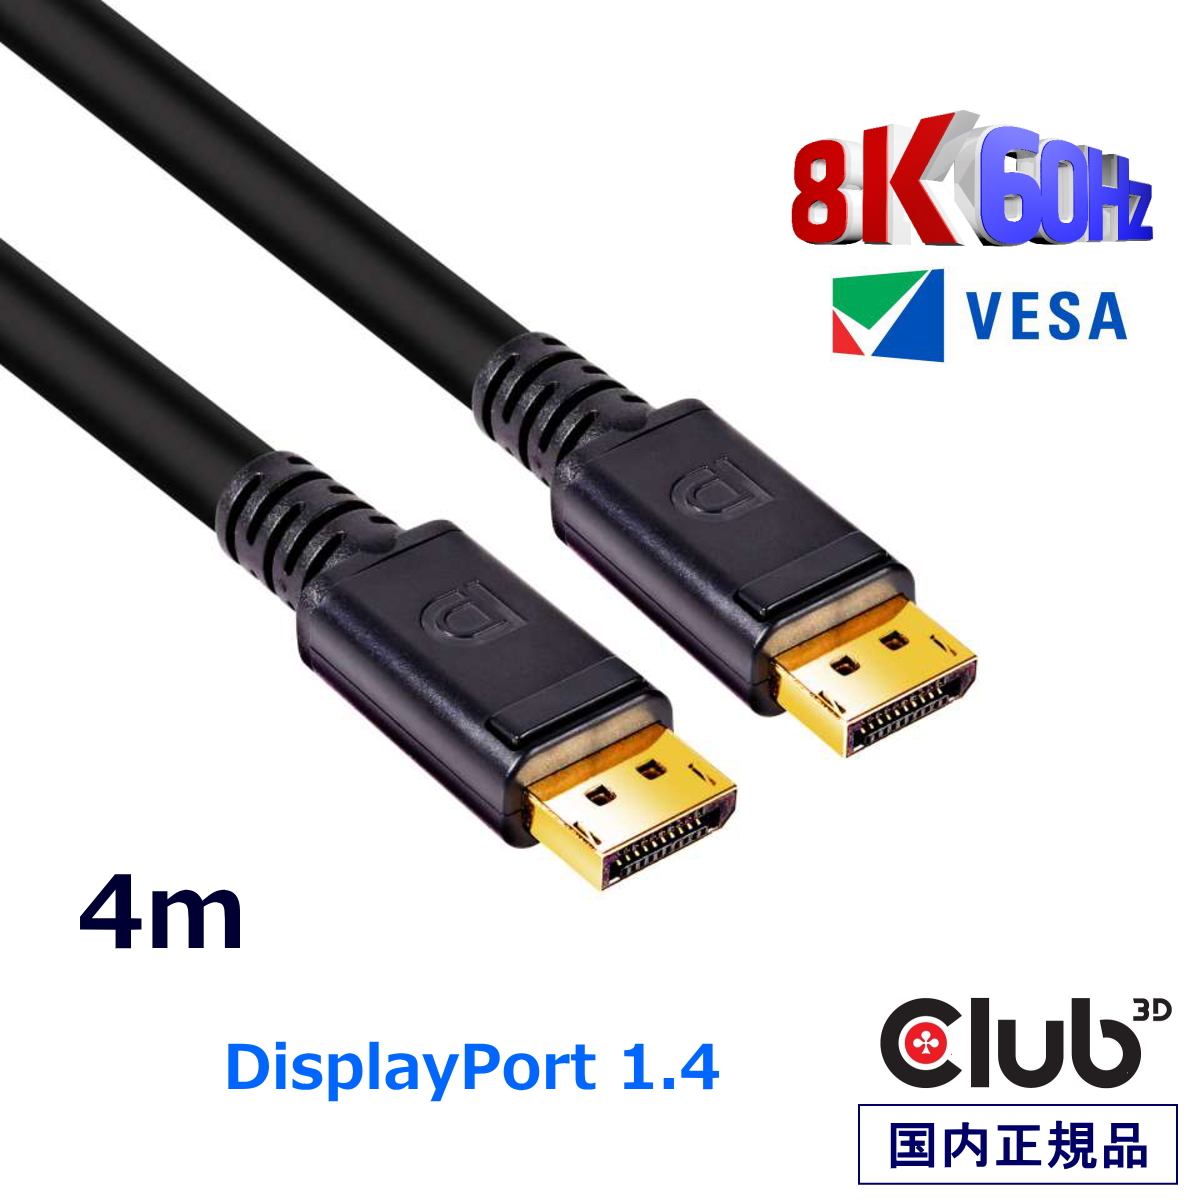 ゲーミングモニター 240Hz に対応！ VESA認証 DisplayPort 1.4 ケーブル 国内正規品 Club3D DisplayPort 1.4 HBR3 (High Bit Rate 3) 8K 60Hz Male/Male 4m 24AWG ディスプレイ ケーブル Cable (CAC-1069B)